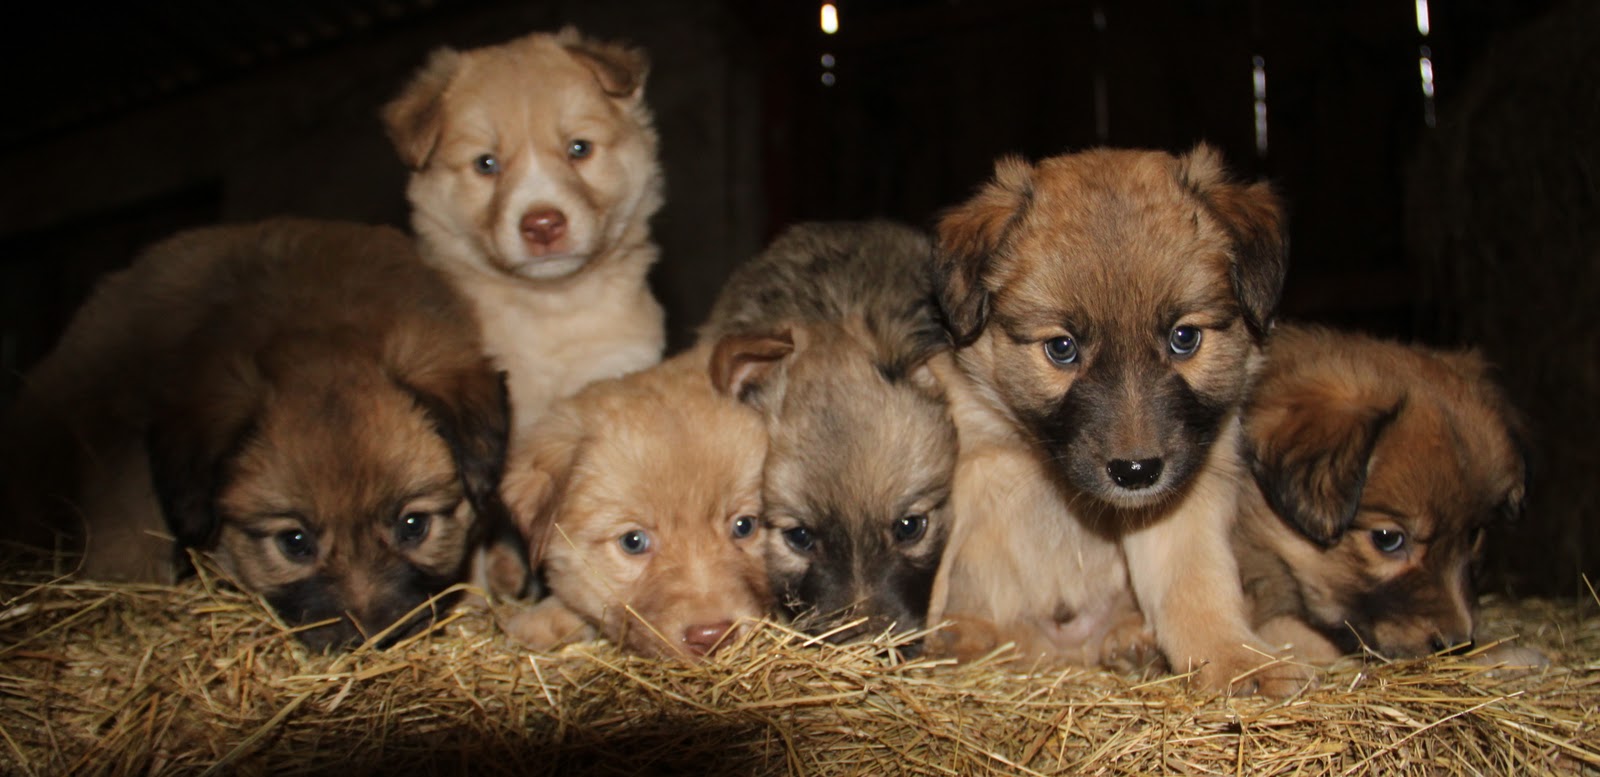 Basque Shepherd Puppies - Puppy Dog Gallery